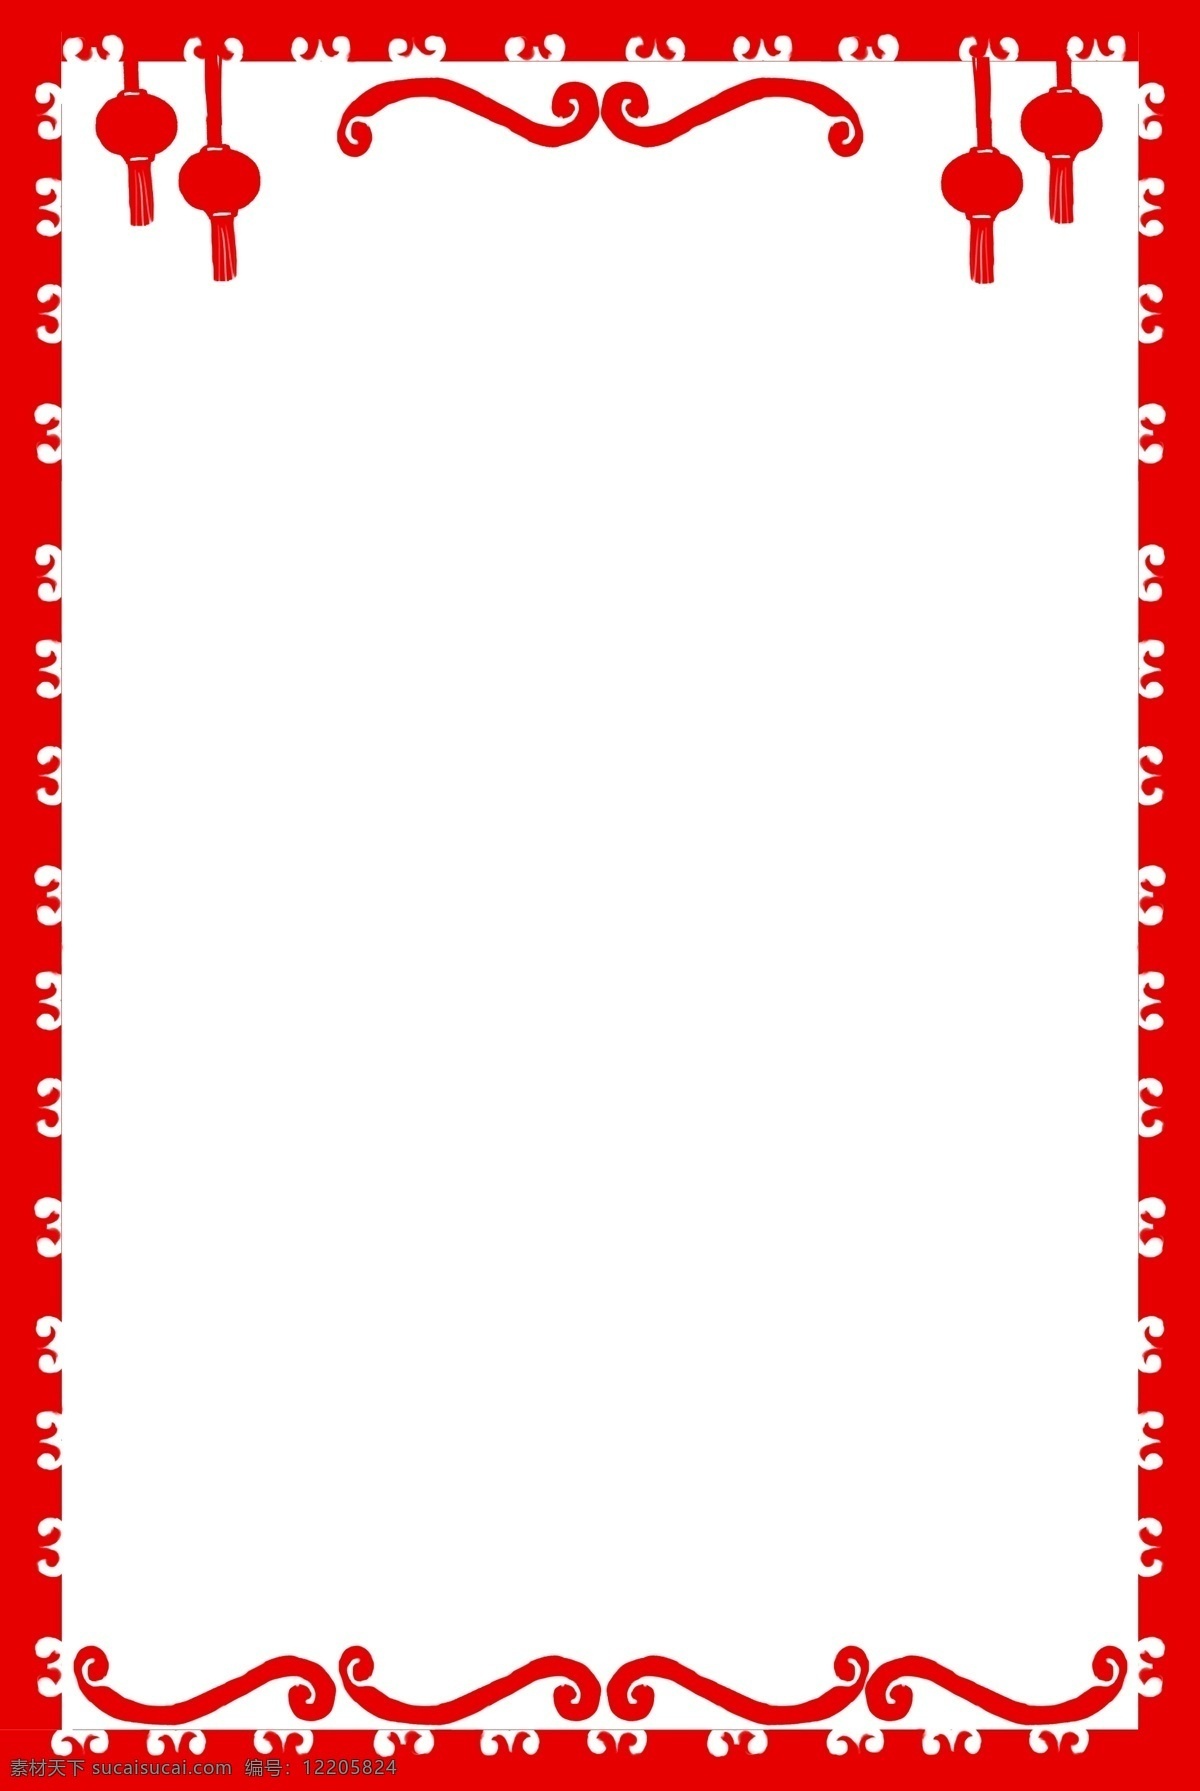 新年 灯笼 边框 插画 新年灯笼边框 漂亮 红色 喜庆灯笼边框 手绘灯笼边框 卡通灯笼边框